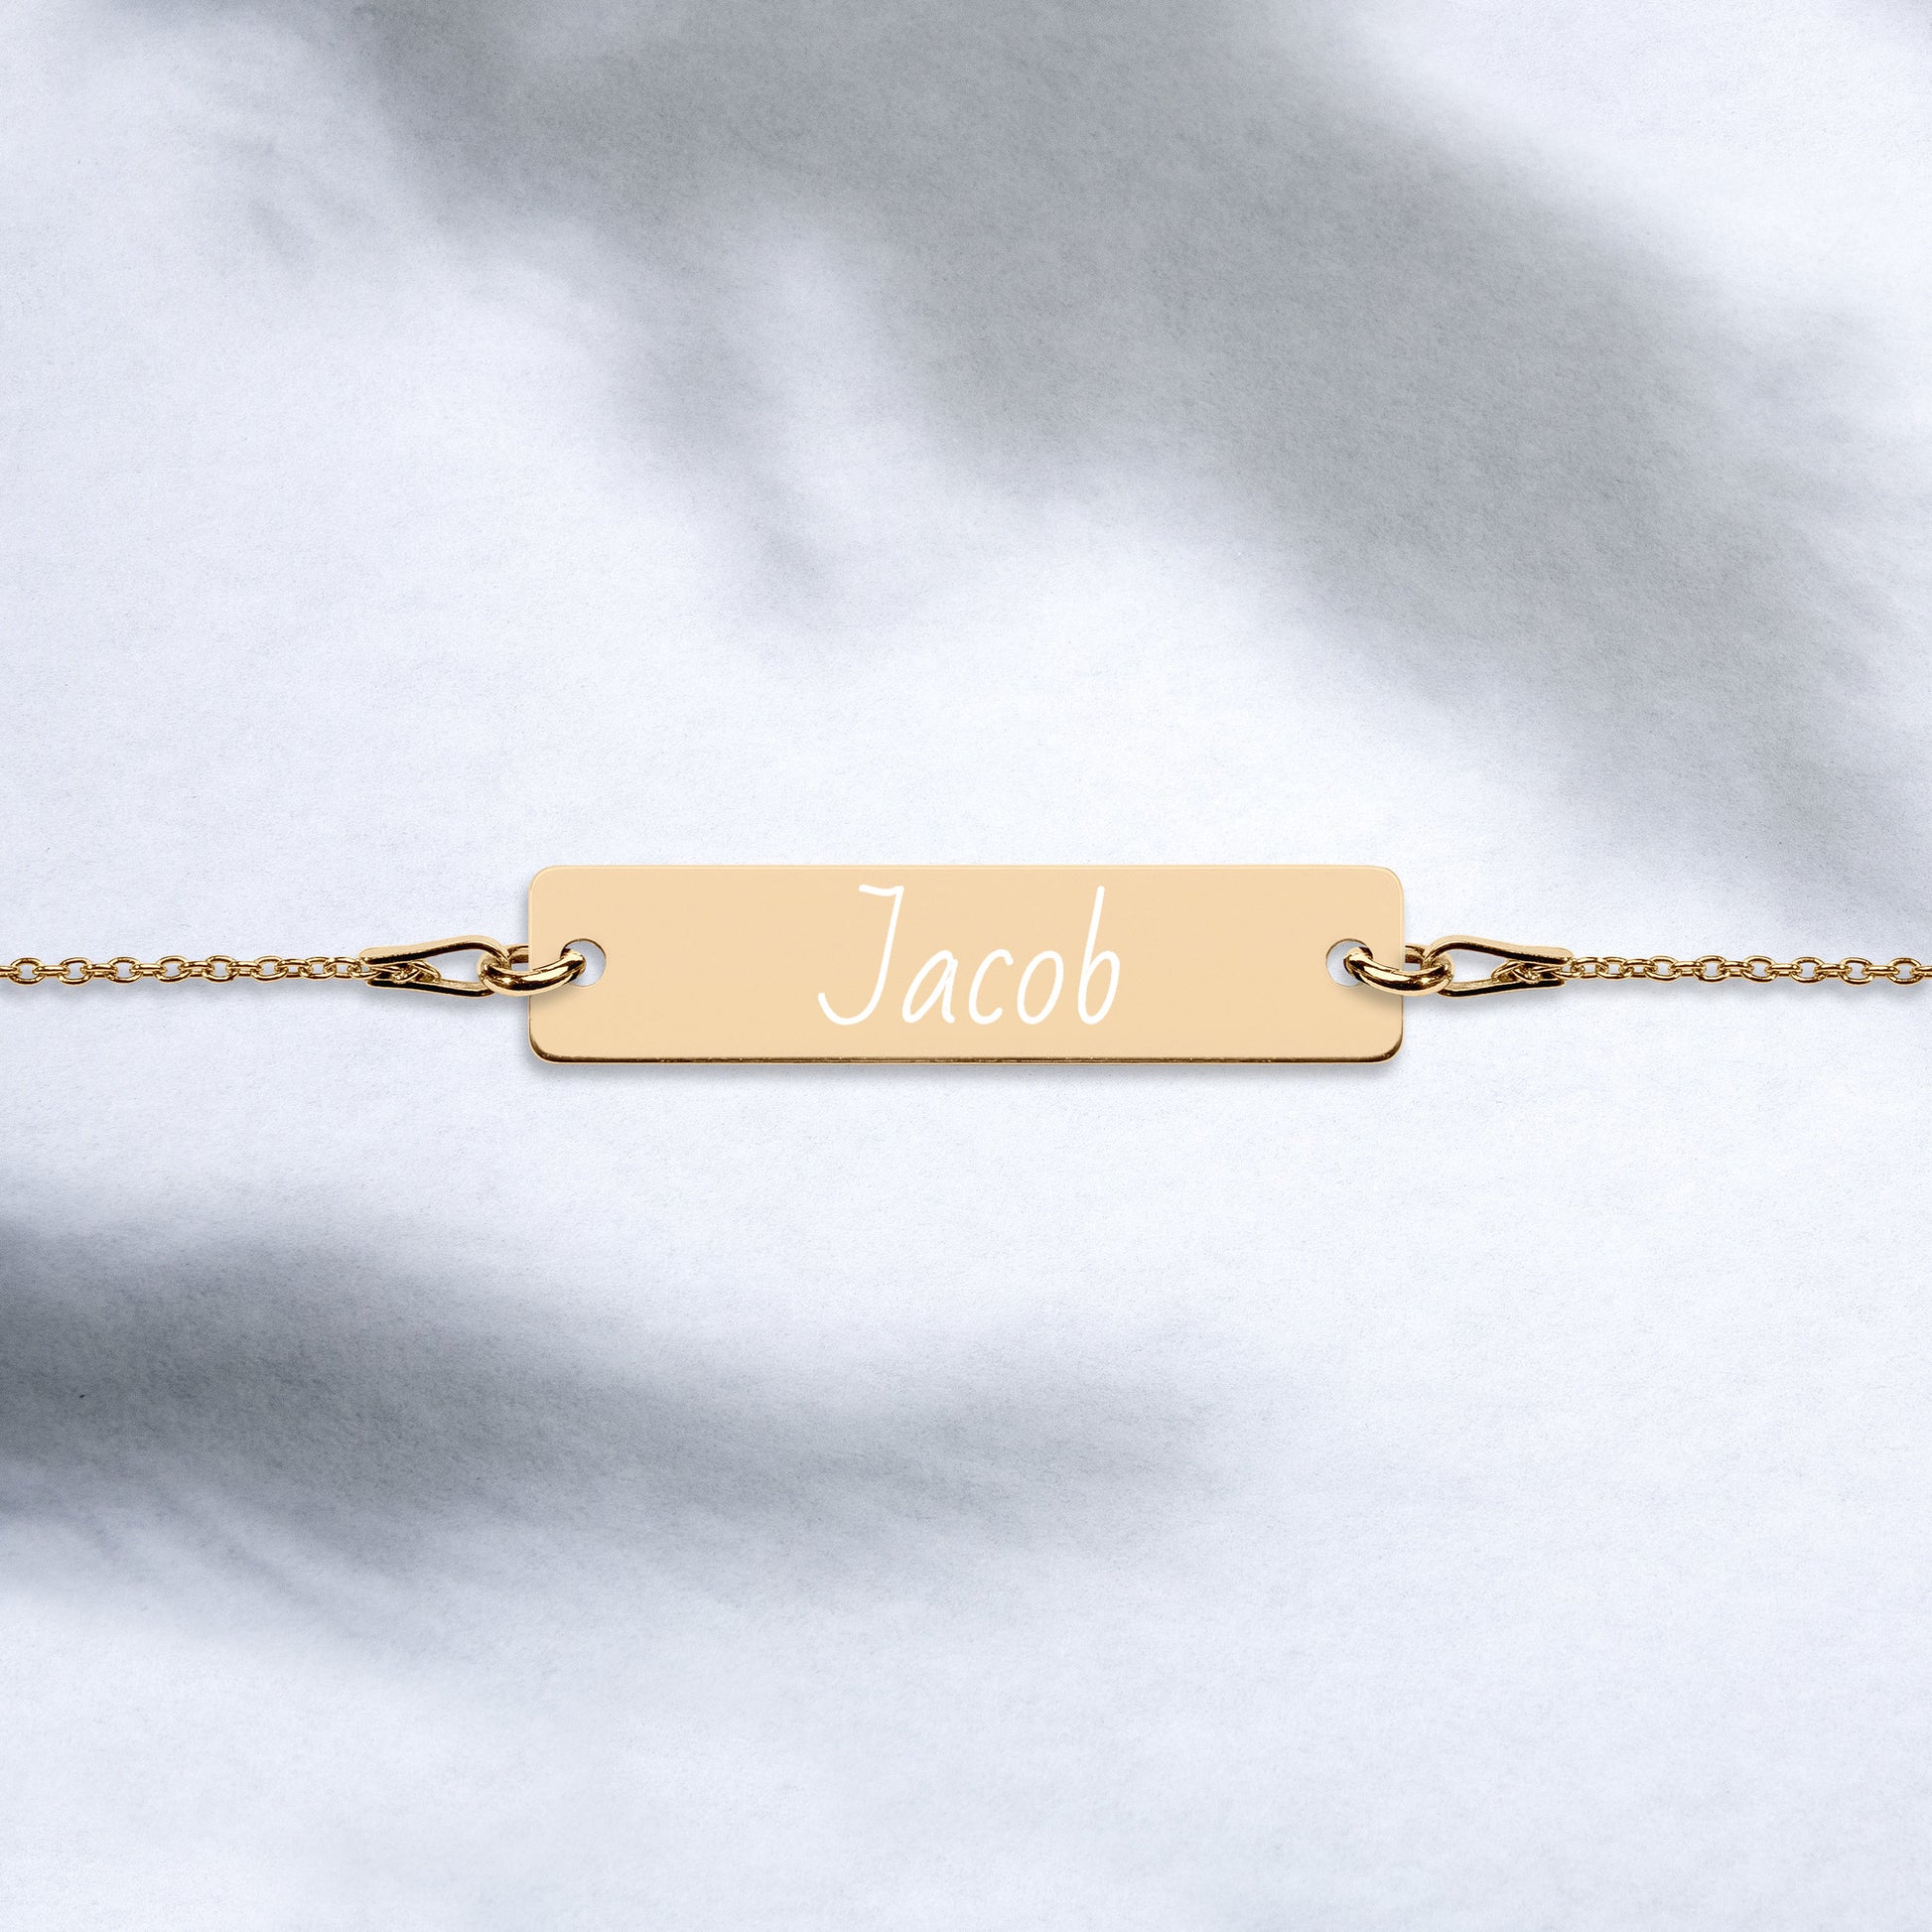 Personalized name bracelet product image